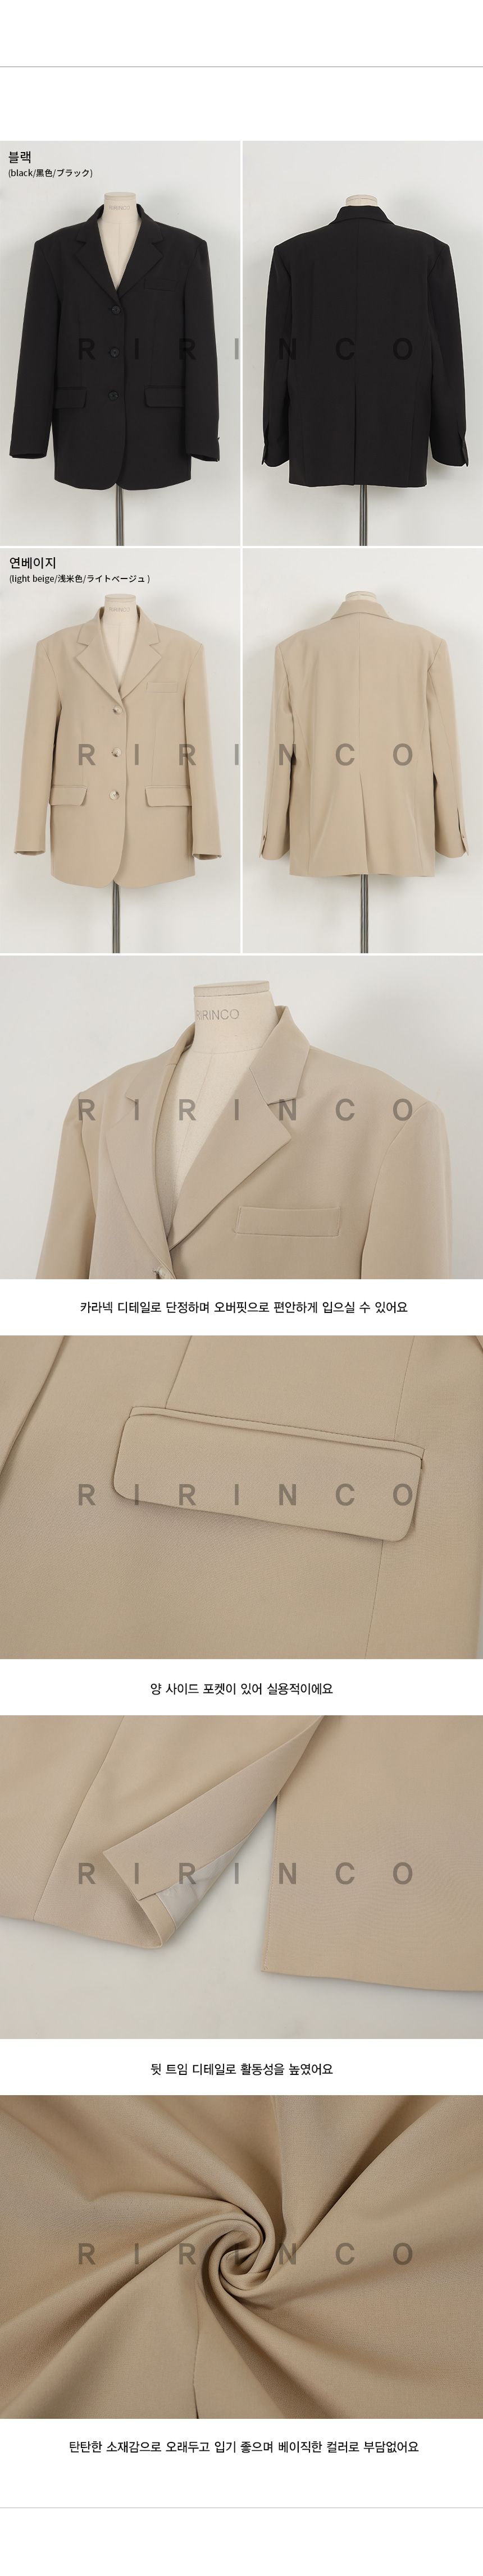 RIRINCO ベーシックテーラード襟シングルジャケット